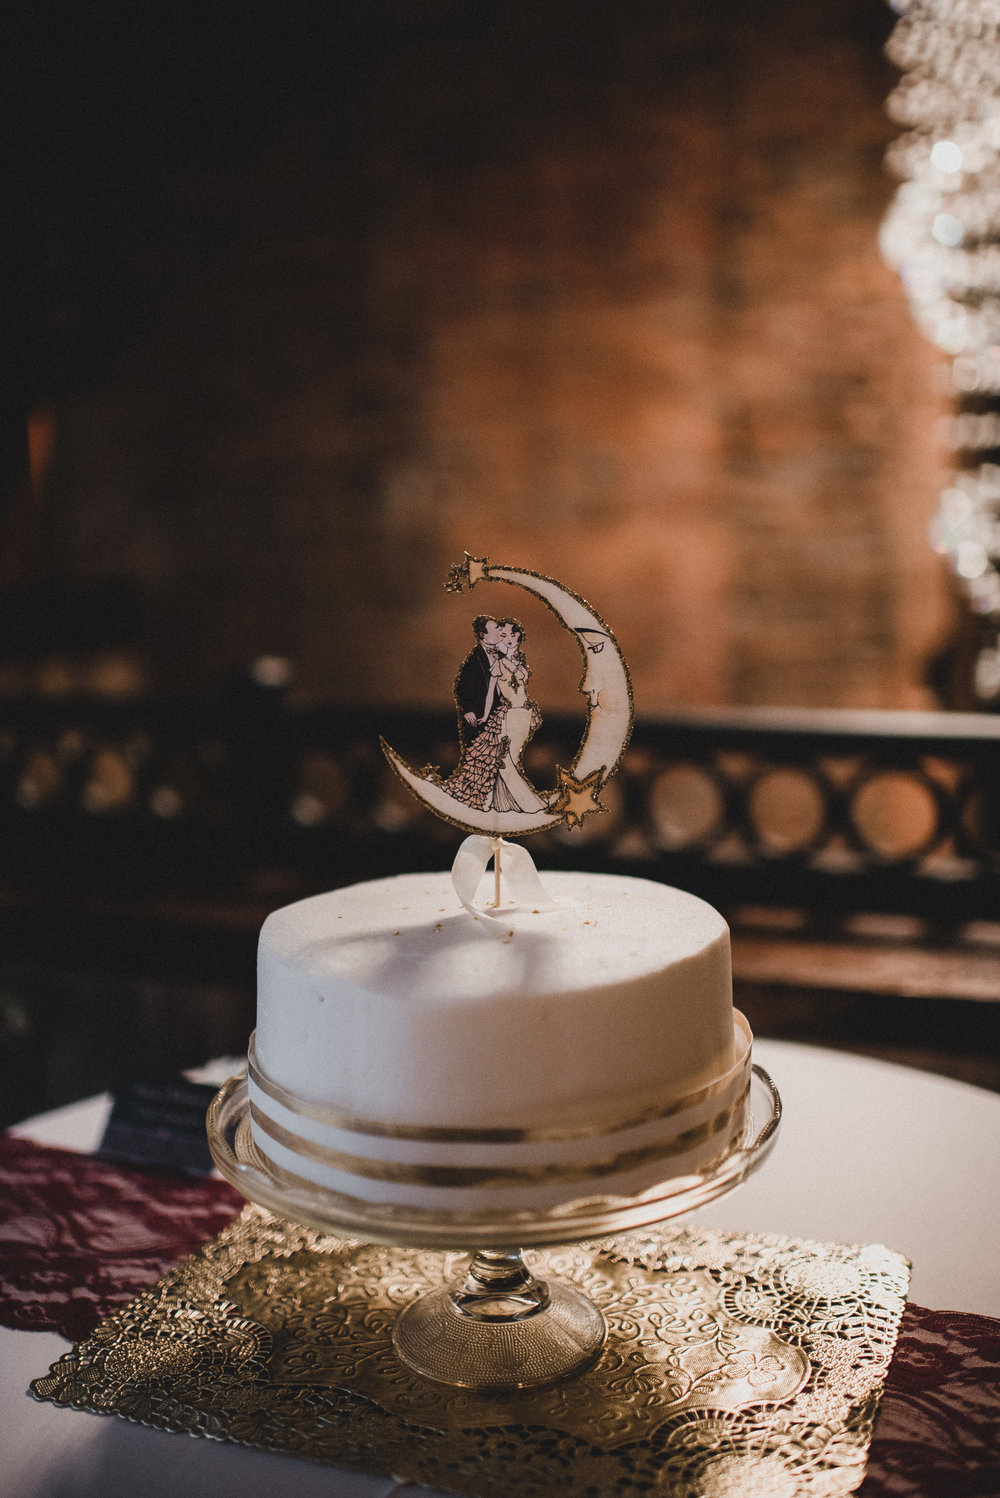 Single Tier Wedding Cake